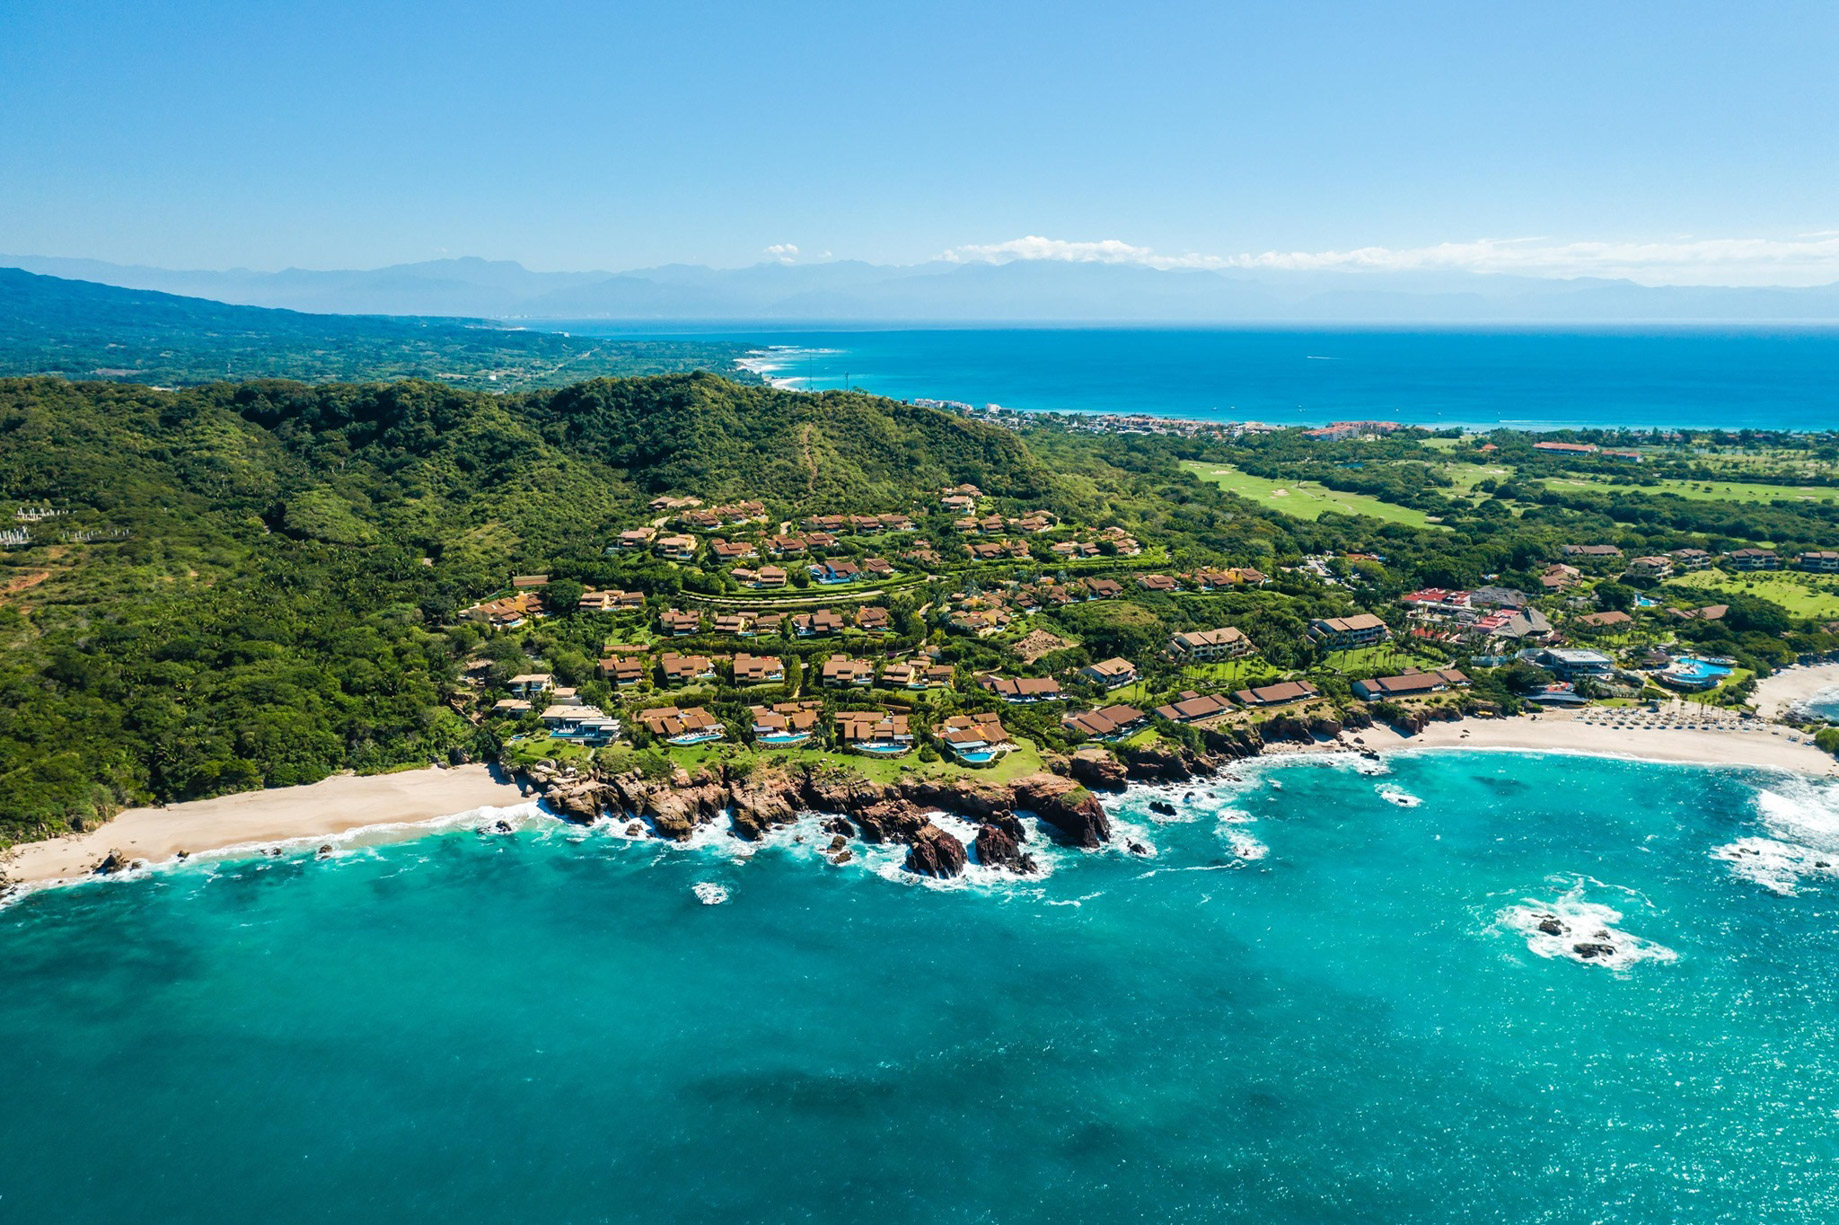 Four Seasons Resort Punta Mita – Nayarit, Mexico – Beach House and Villa Aerial View